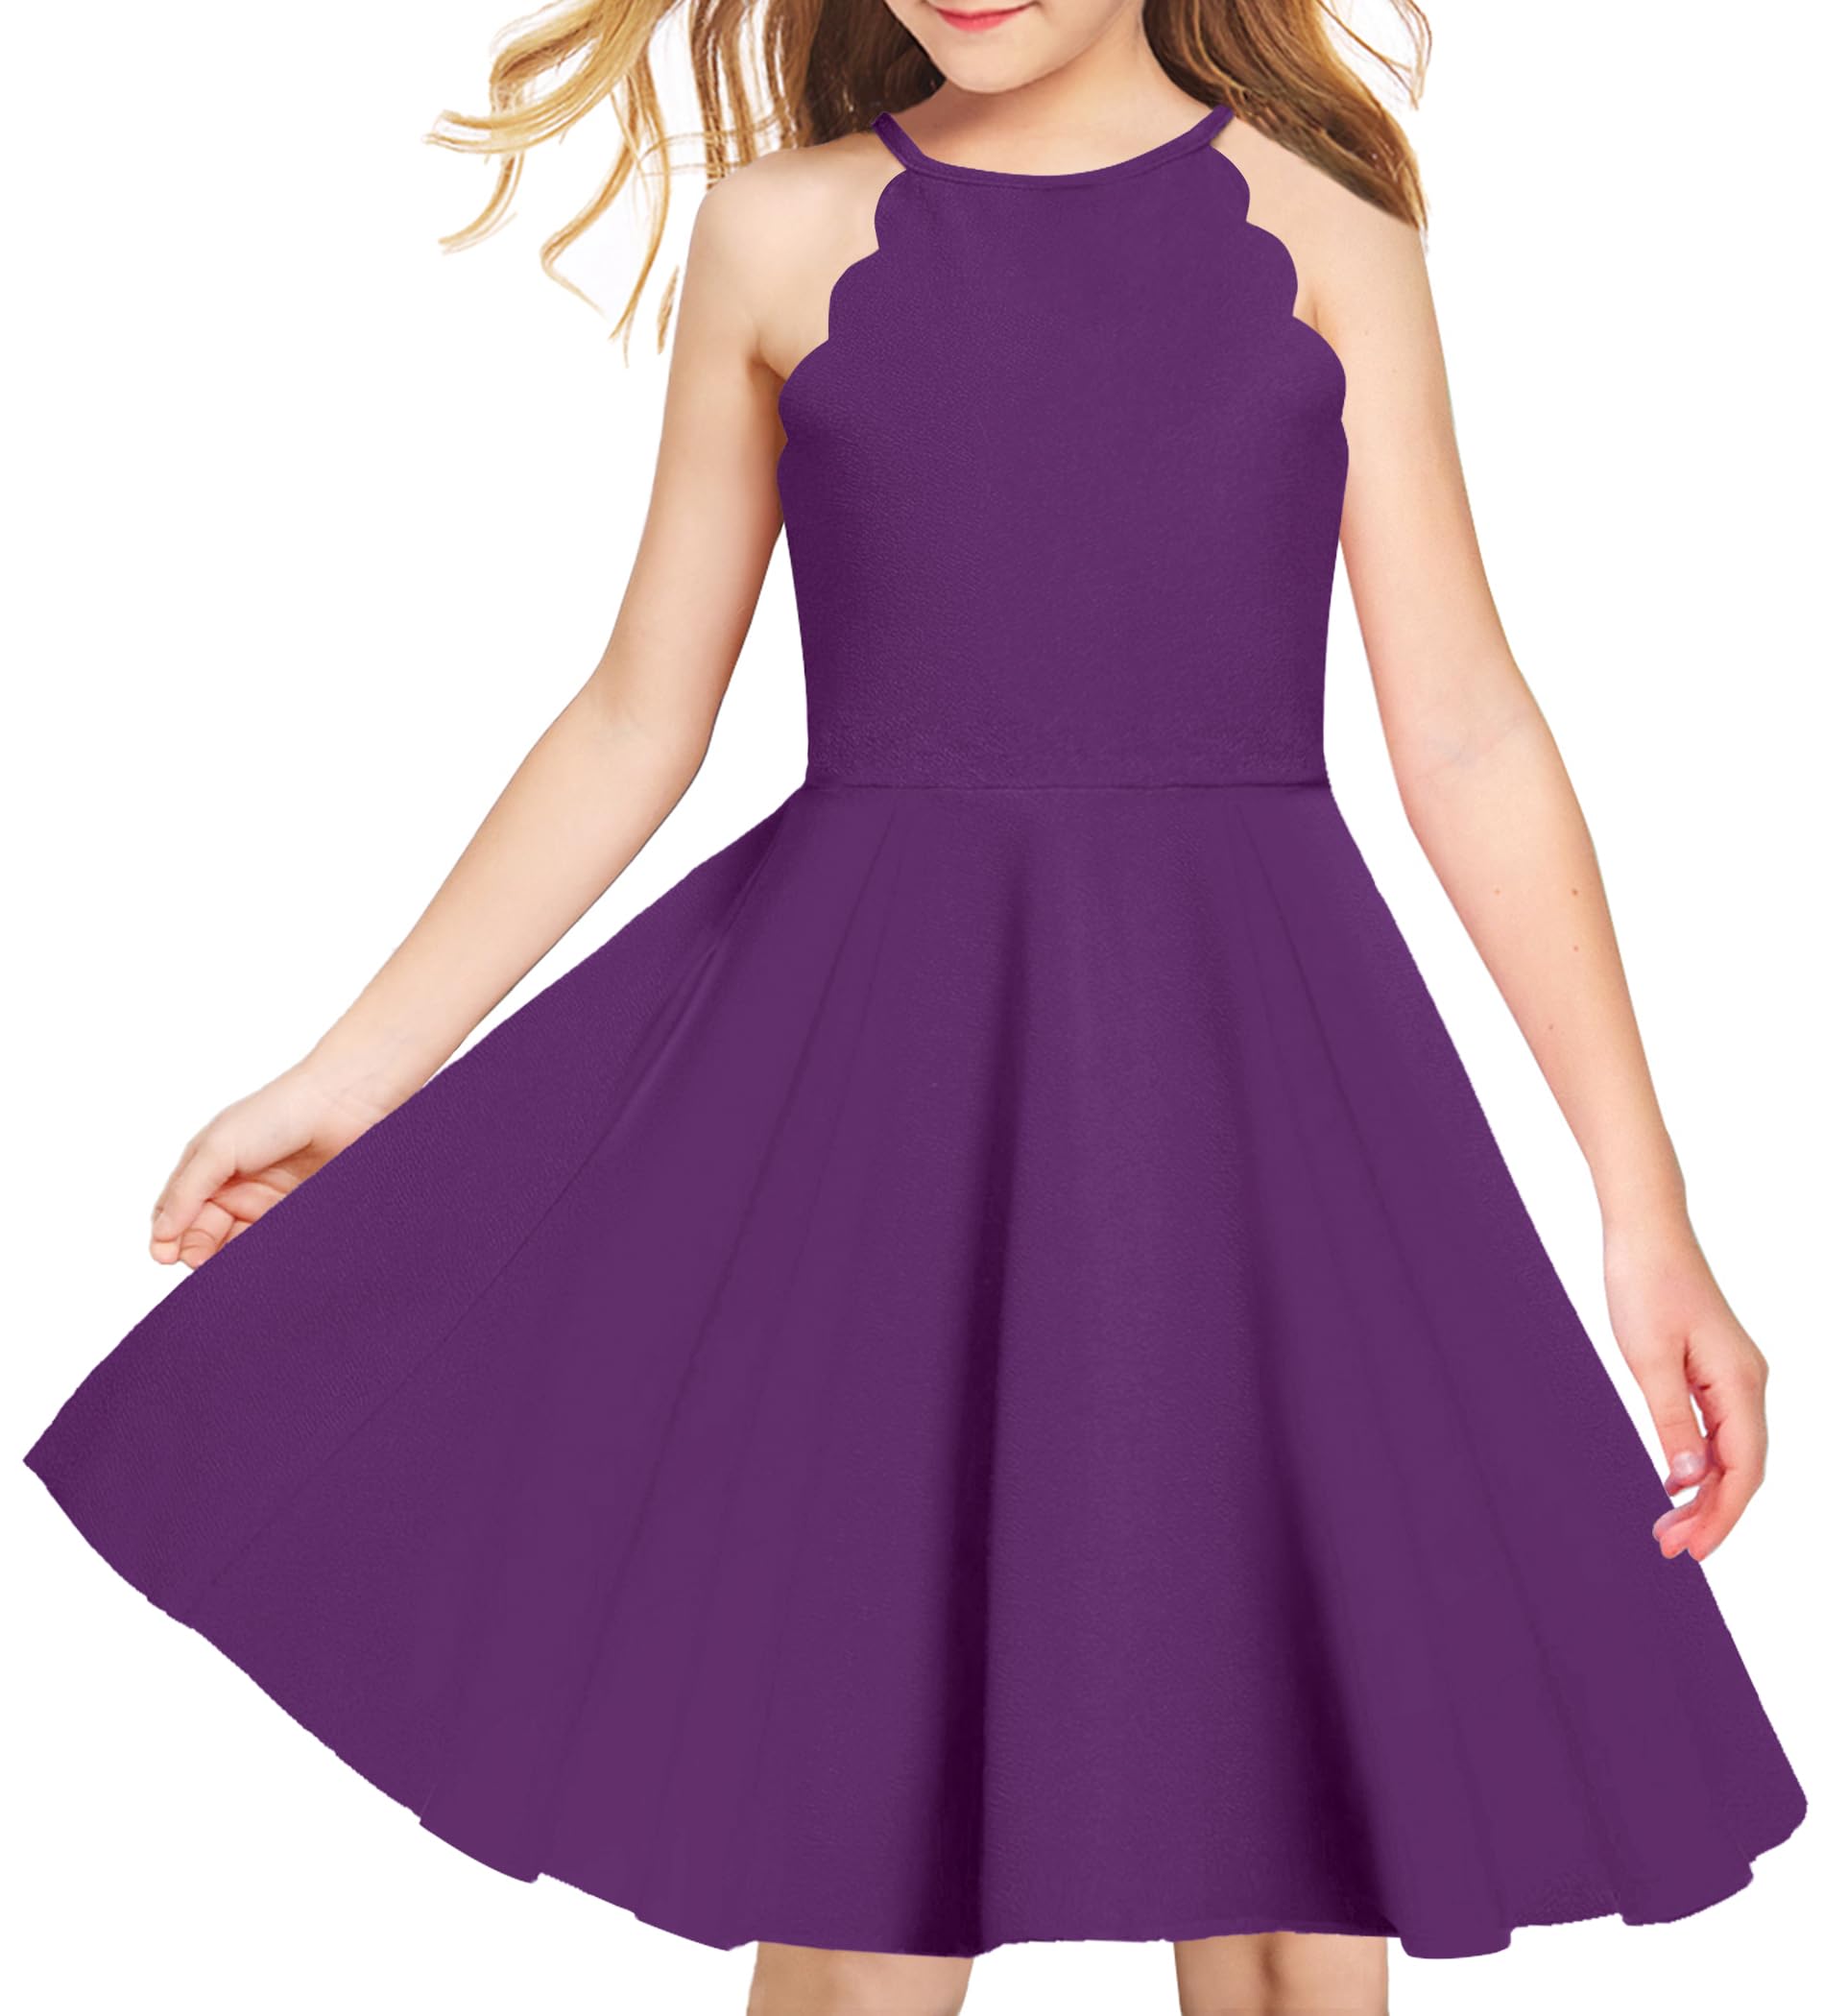 Arshiner Girls' Dress Halter Neck Summer Sundress Sleeveless Elegant A-line Pockets Party Dress